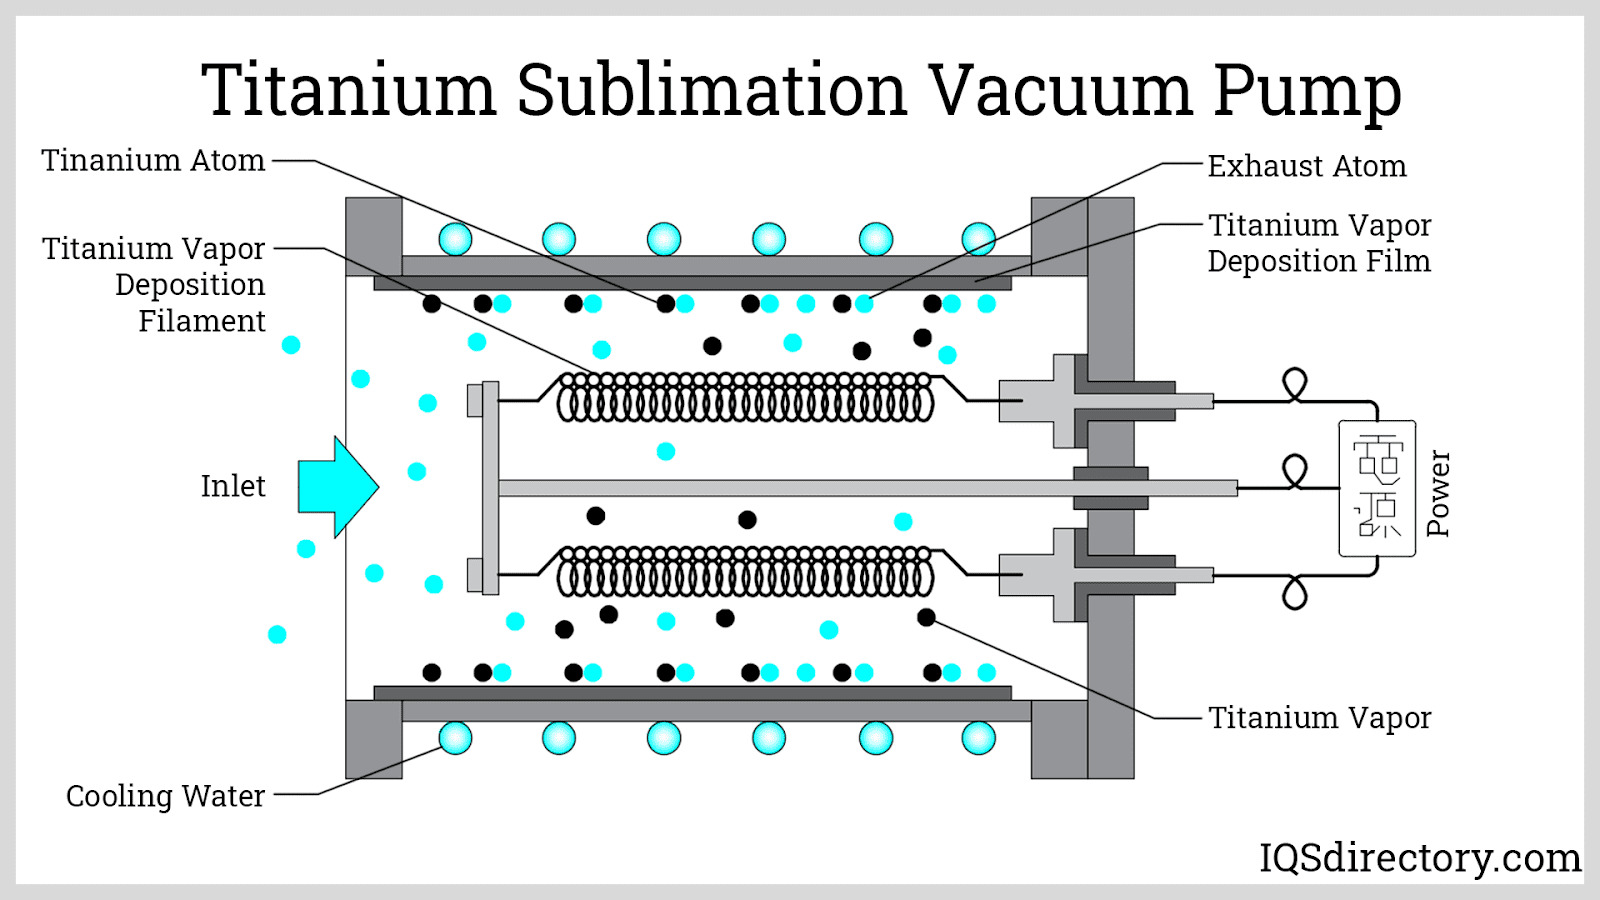 Titanium Sublimation Vacuum Pump